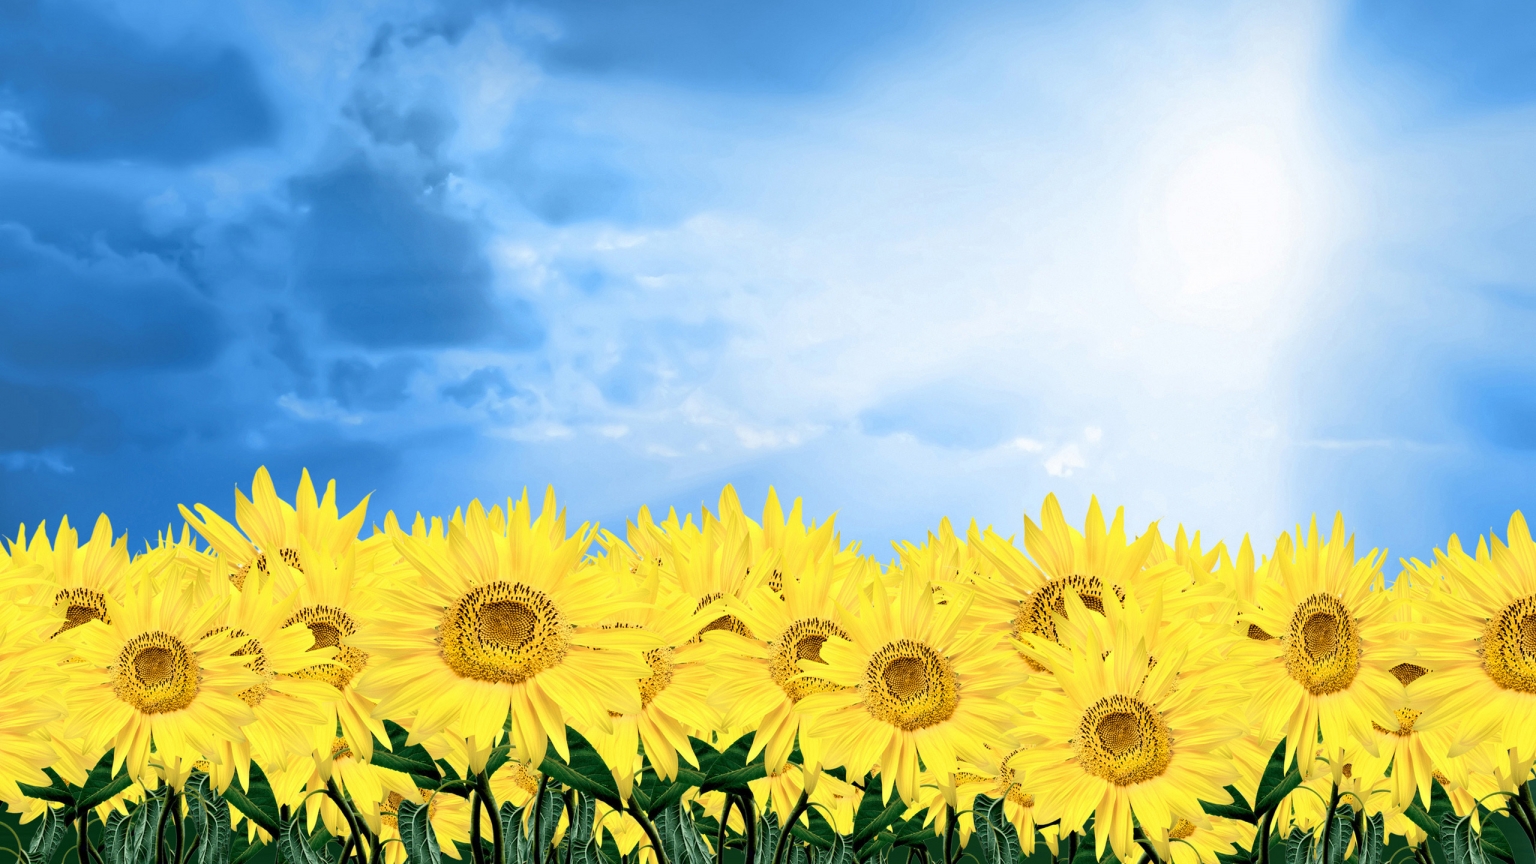 Summer Sunflowers for 1536 x 864 HDTV resolution